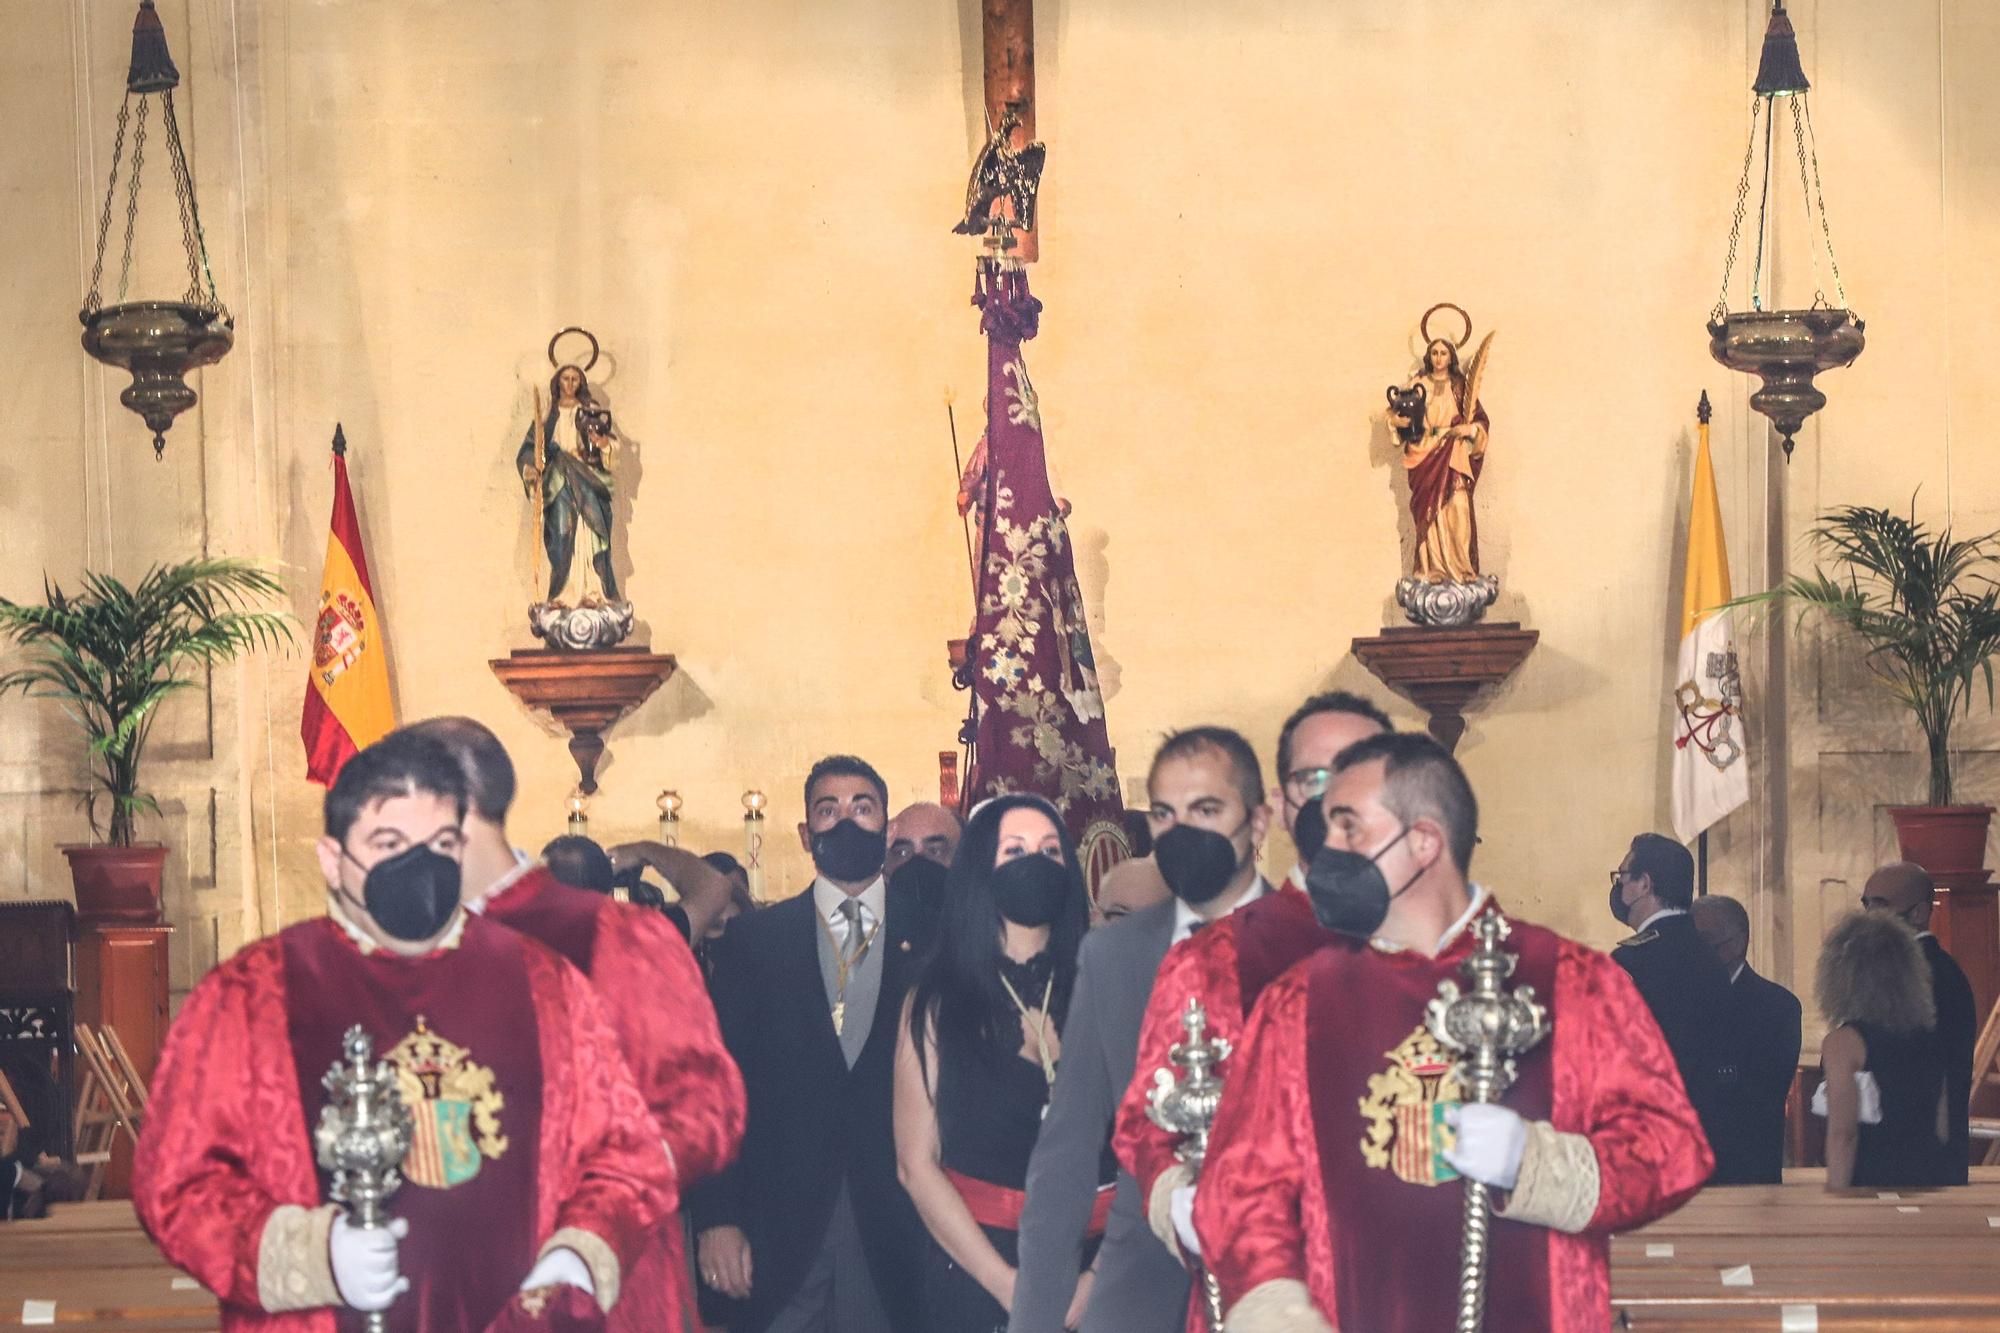 779 Aniversario de La Reconquista de Orihuela con la celebración institucional e histórica sin público por el covid